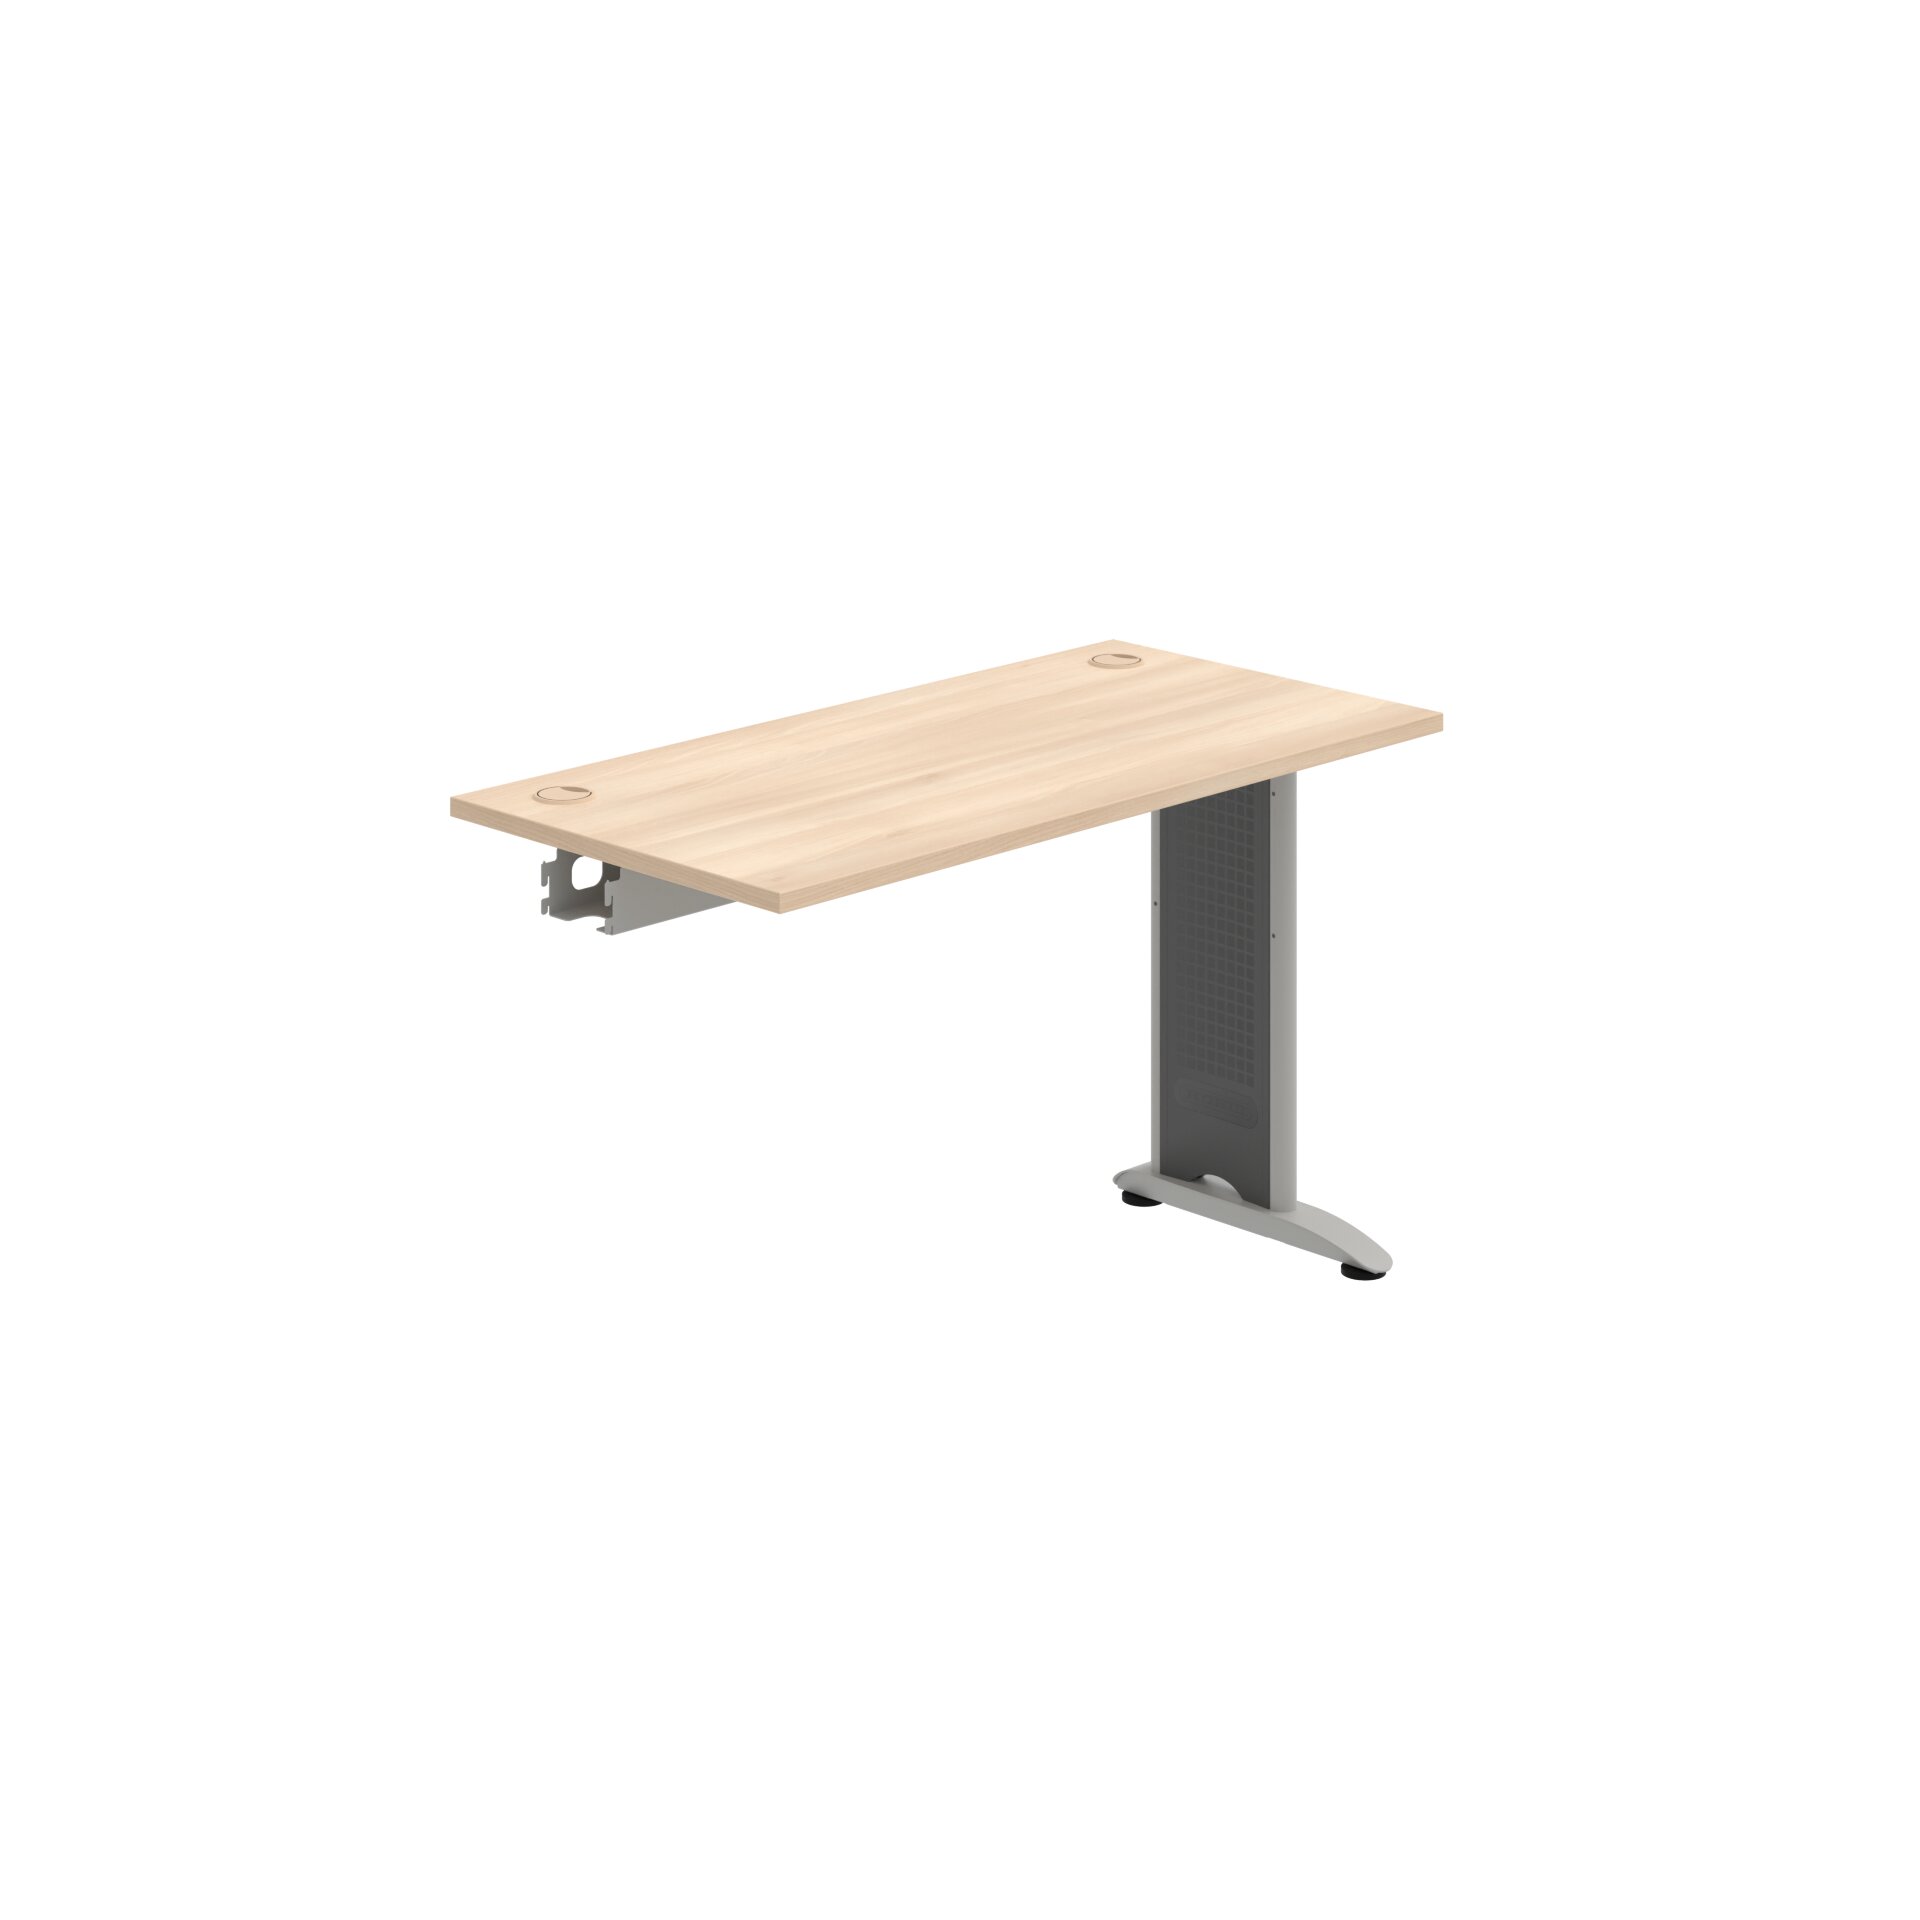 FE 1200 R – Stůl pracovní řetězící rovný 120 cm, hl. 60 cm